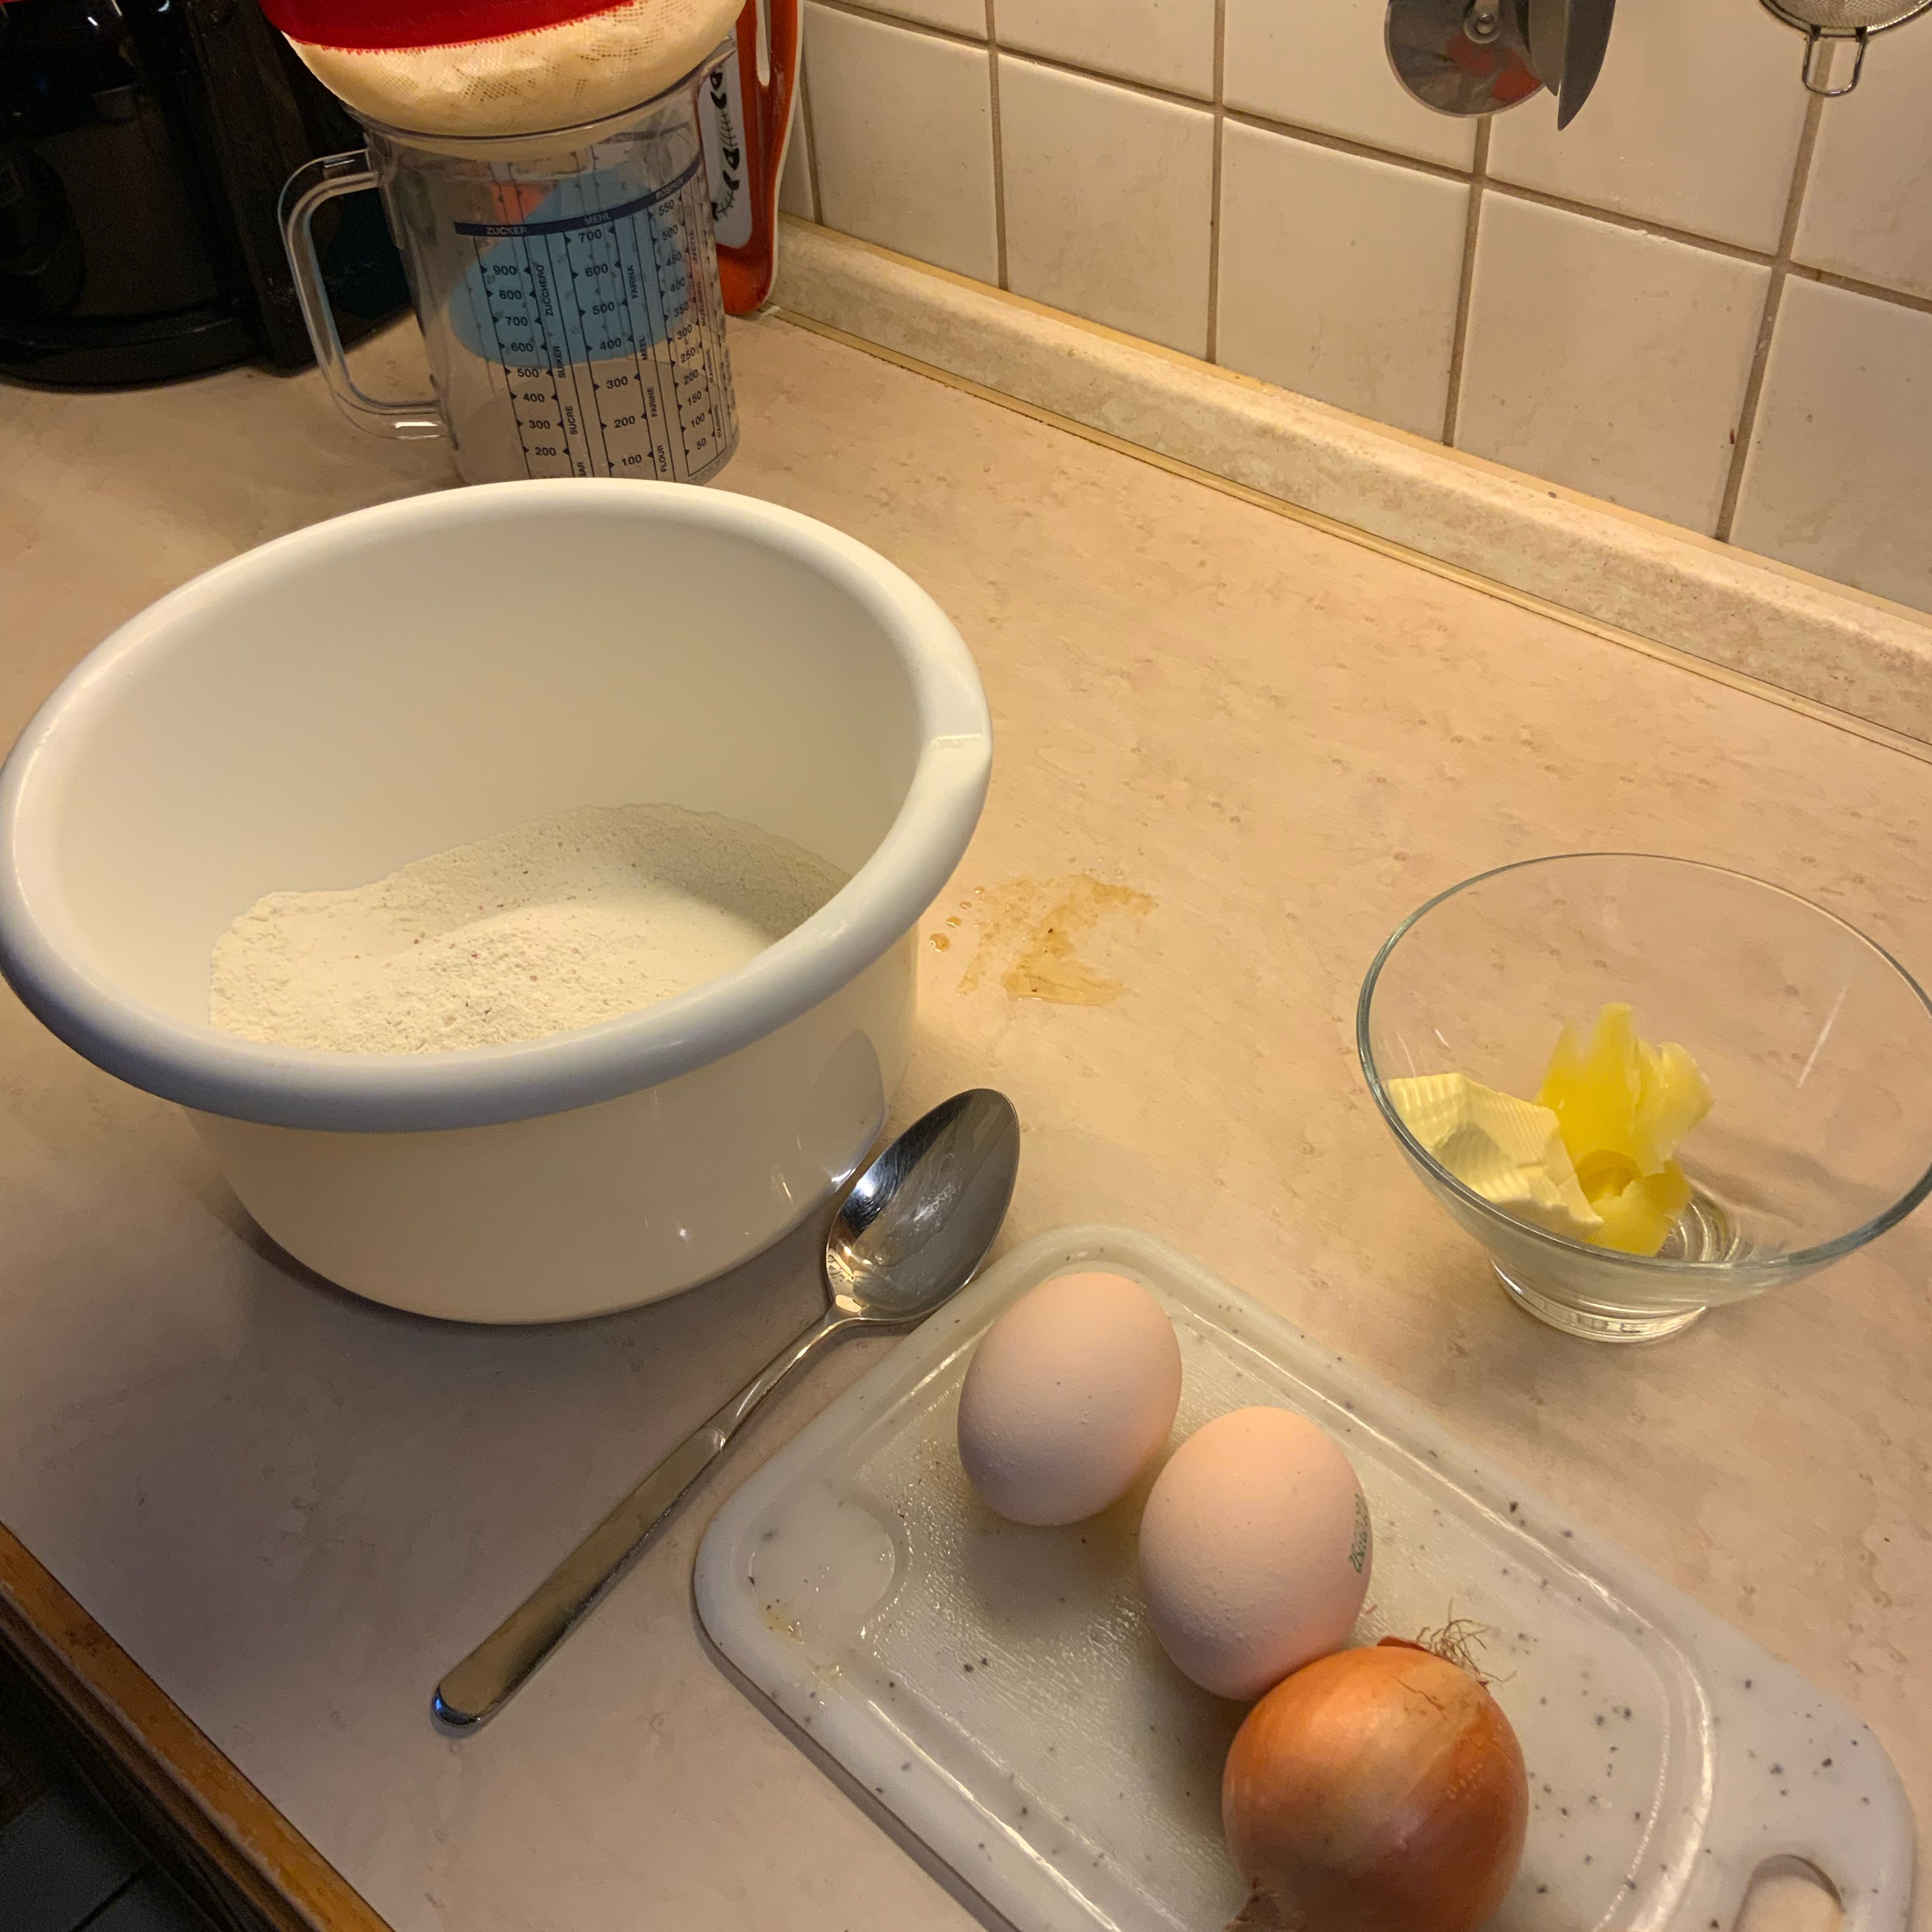 Jetzt gehts los mit dem Krautkrapfenteig. Das Mehl, die Eier, wenig Wasser und 1-2 Prisen Salz….